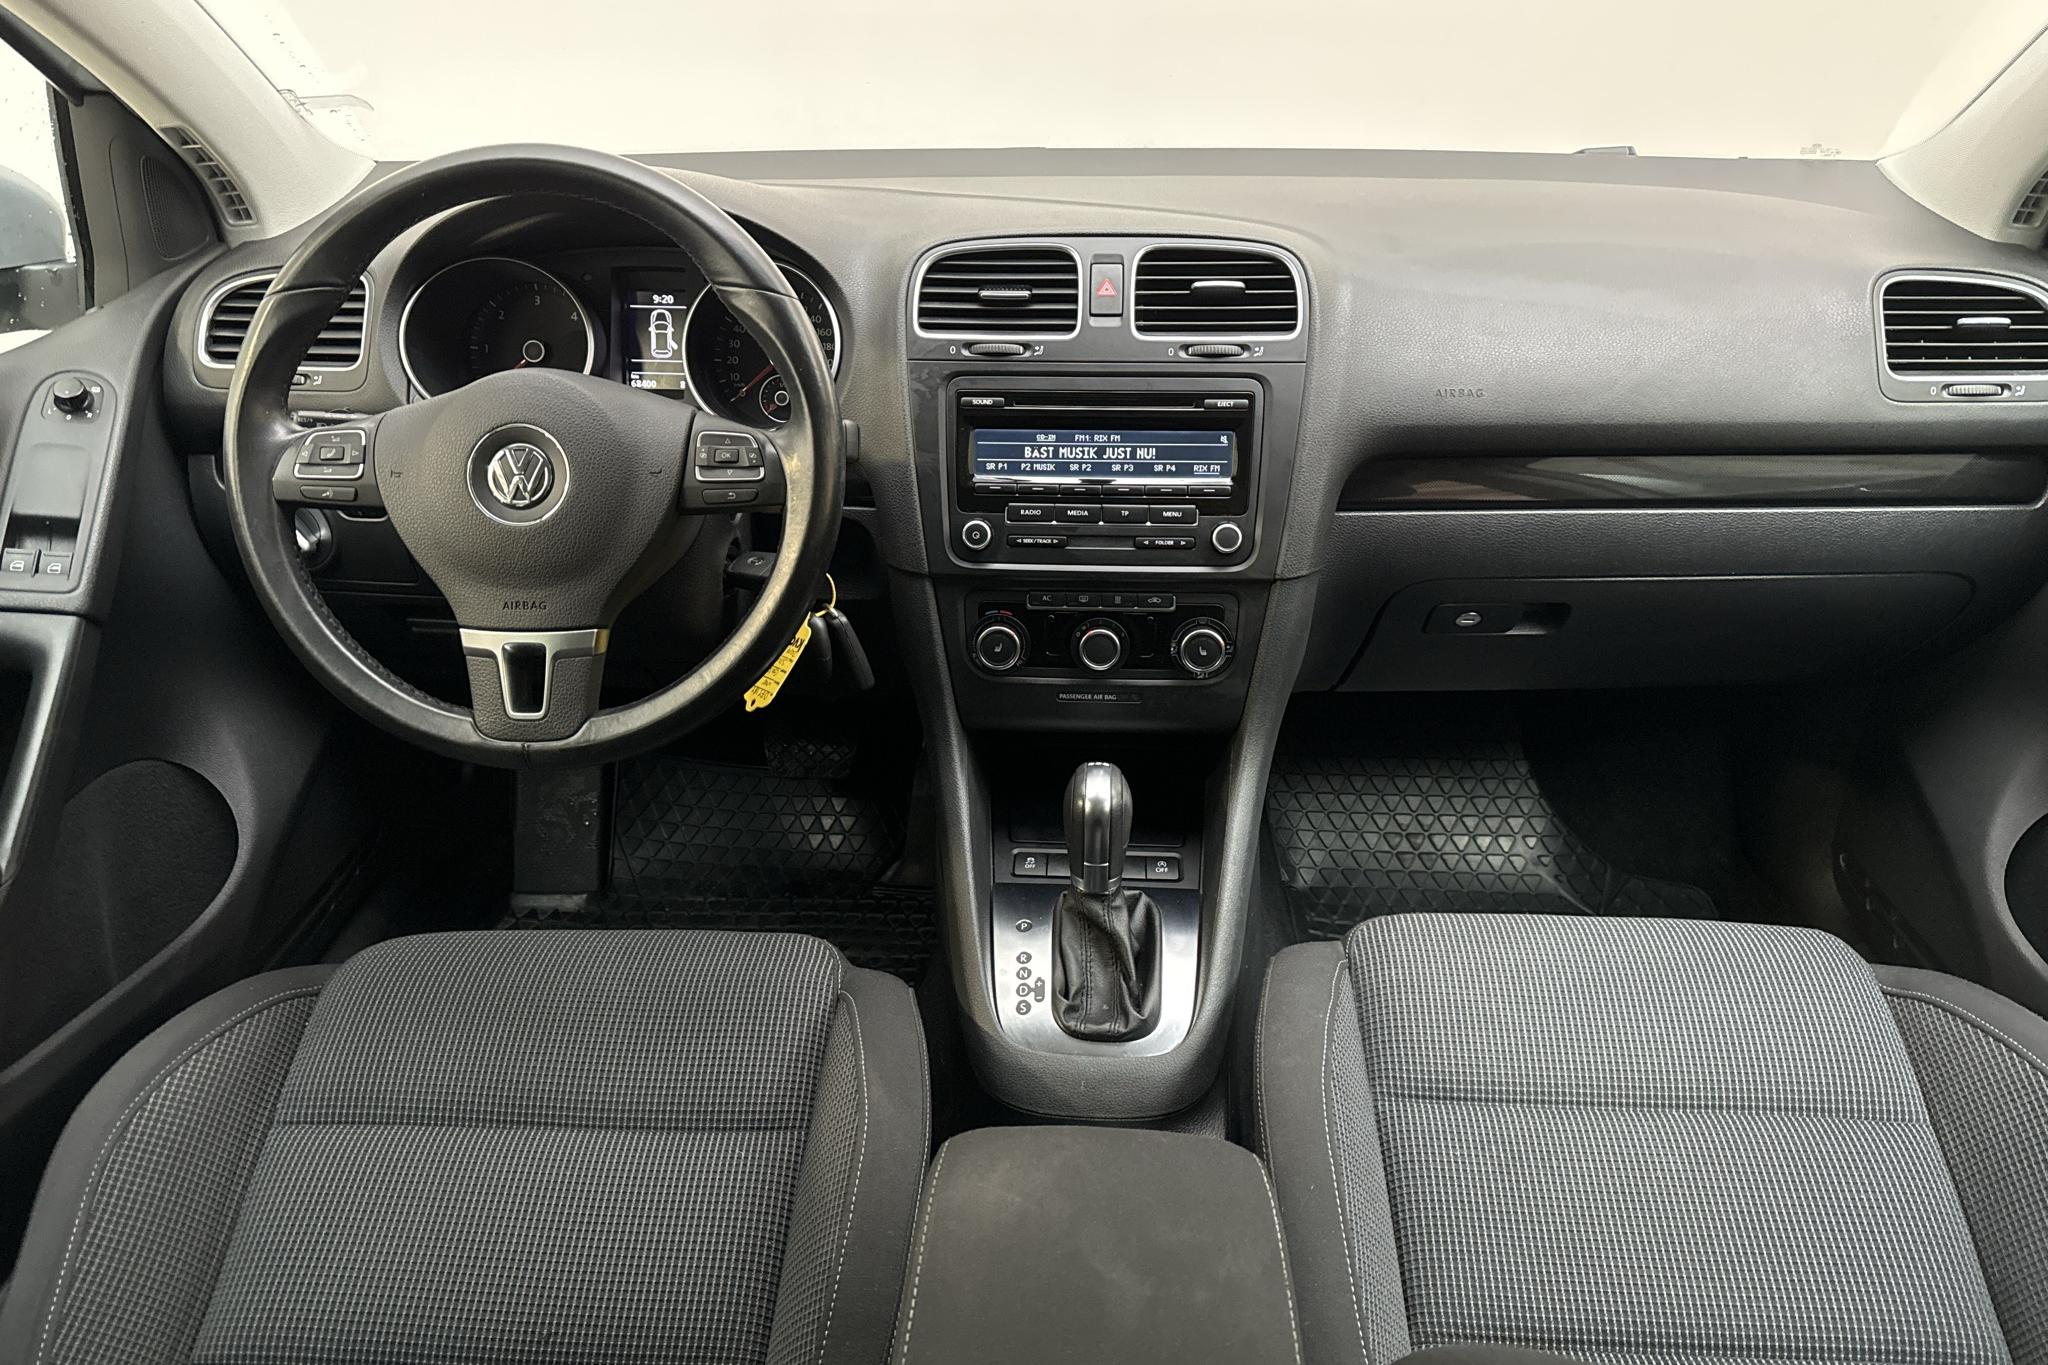 VW Golf VI 1.6 TDI BlueMotion Technology 5dr (105hk) - 68 390 km - Automaatne - hõbe - 2012